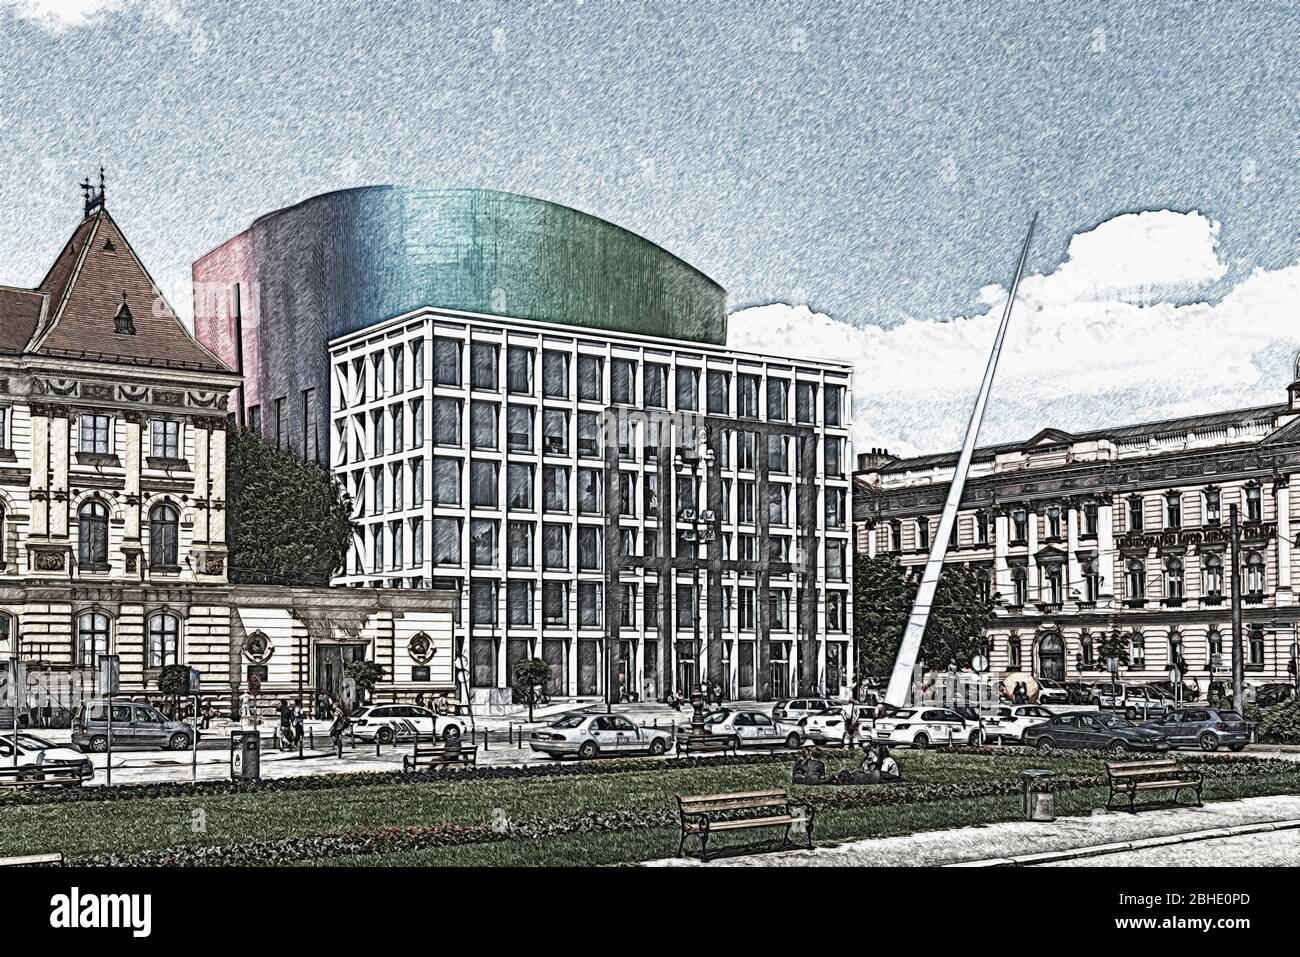 Le nouveau bâtiment de l'Académie de musique de Zagreb a été achevé en septembre 2014, Zagreb, Croatie, Europe Banque D'Images